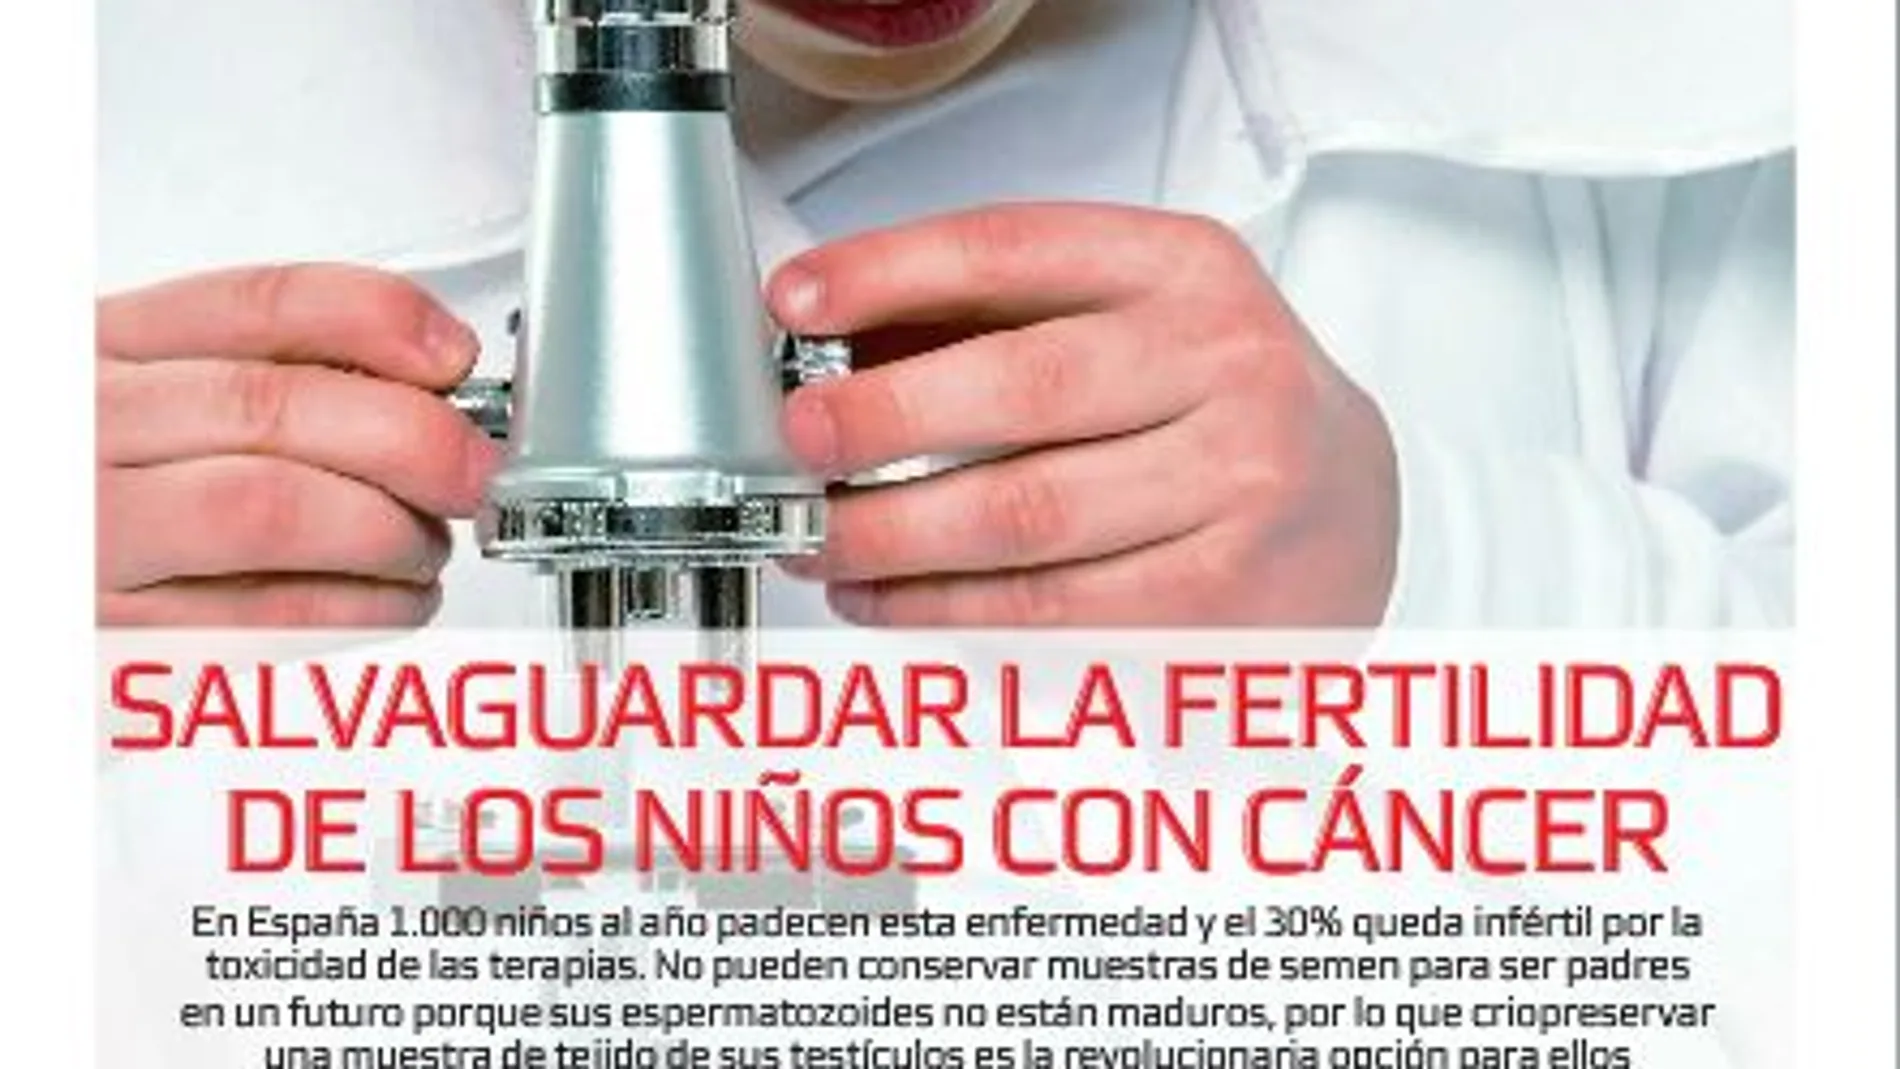 En el suplemento A Tu Salud, cómo criopreservar la fertilidad de los niños con cáncer